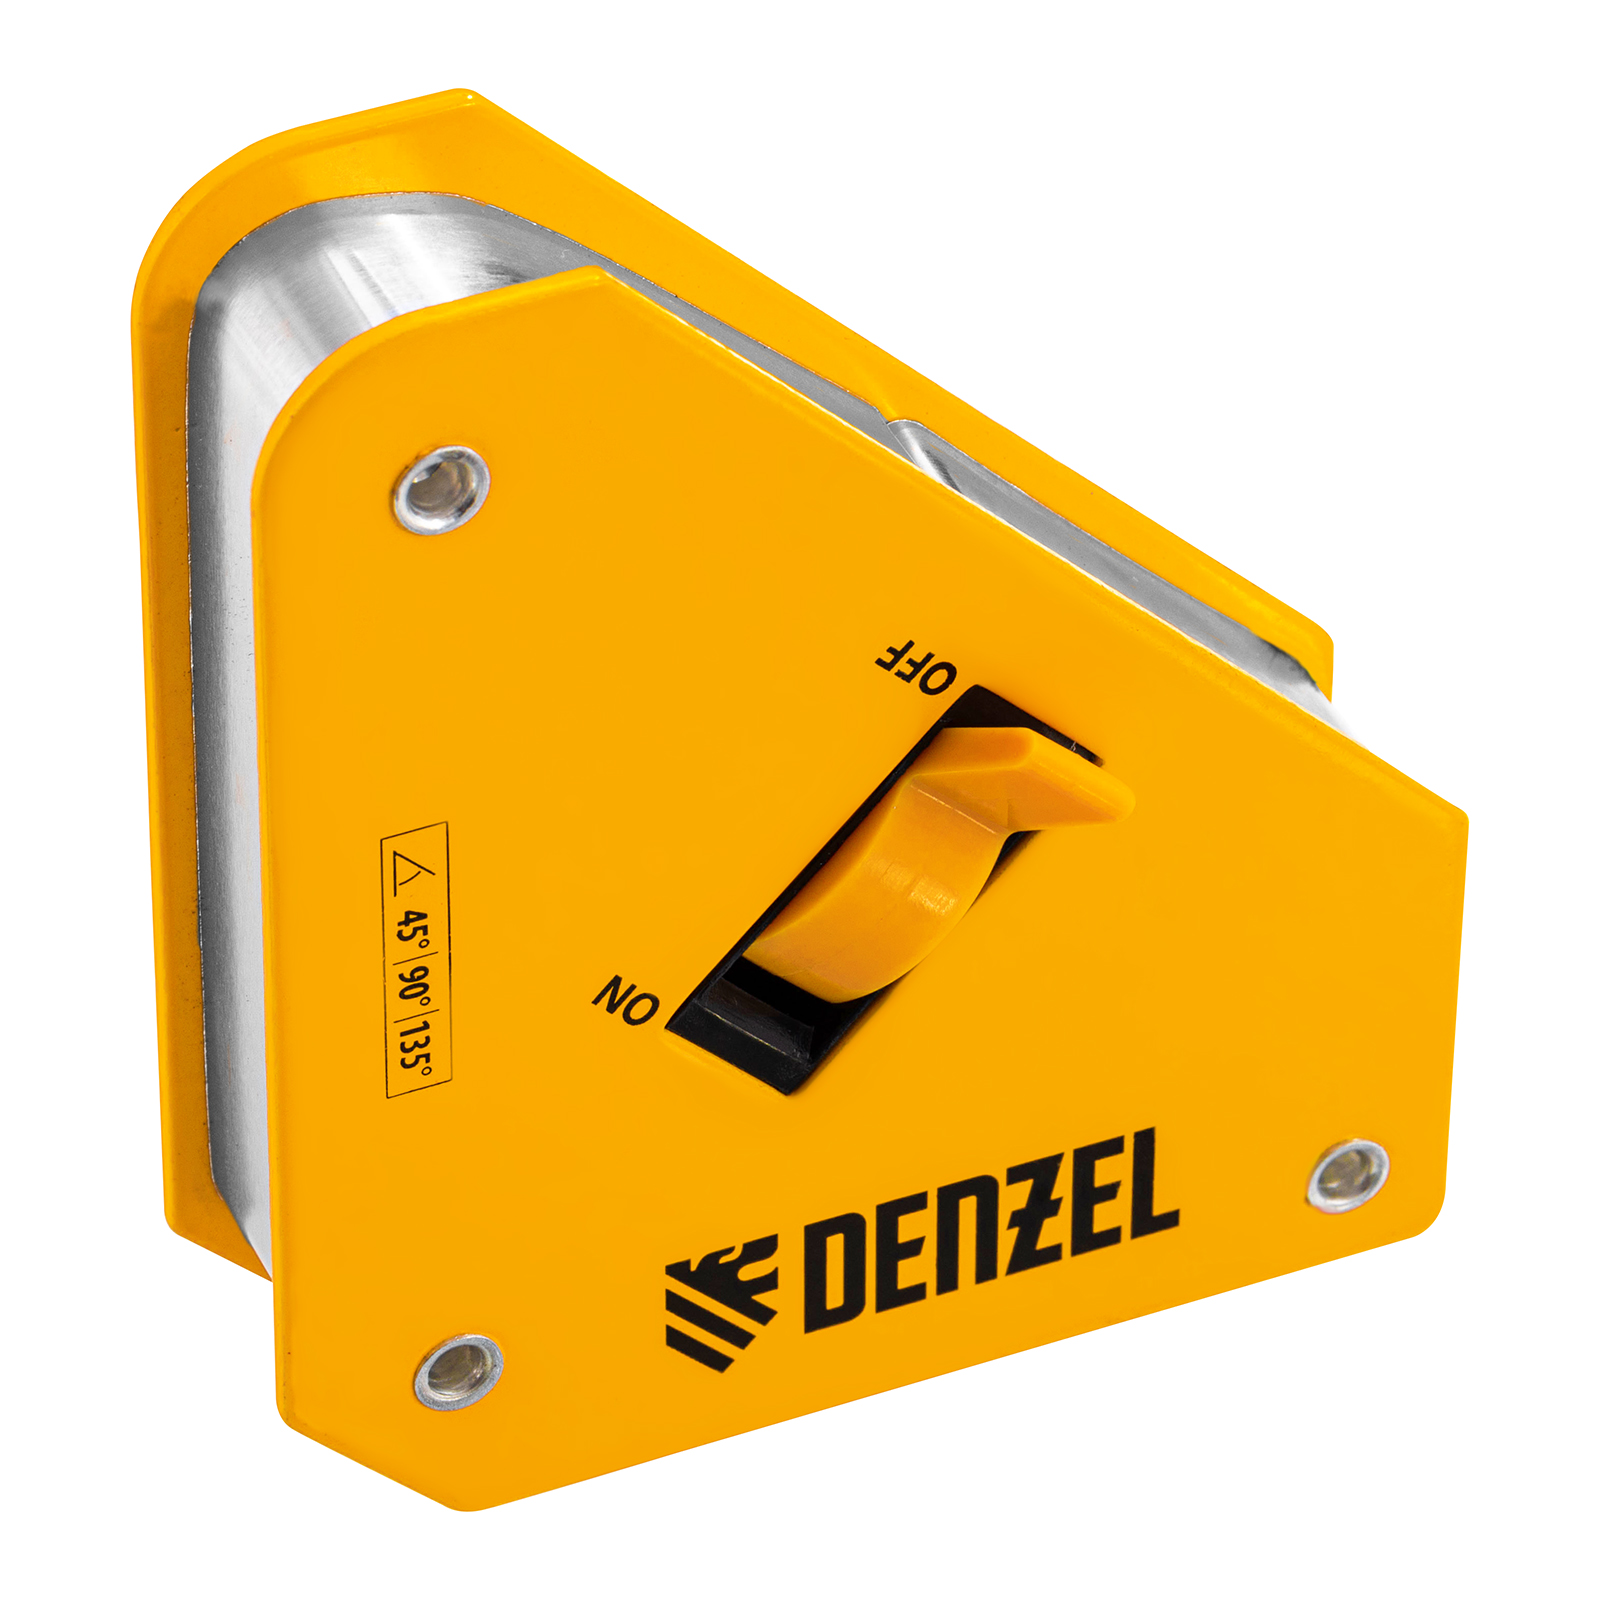 Фиксатор магнитный отключаемый для сварочных работ DENZEL усилие 30 LB, 45х90 град. 97561 магнитный фиксатор для сварочных работ denzel